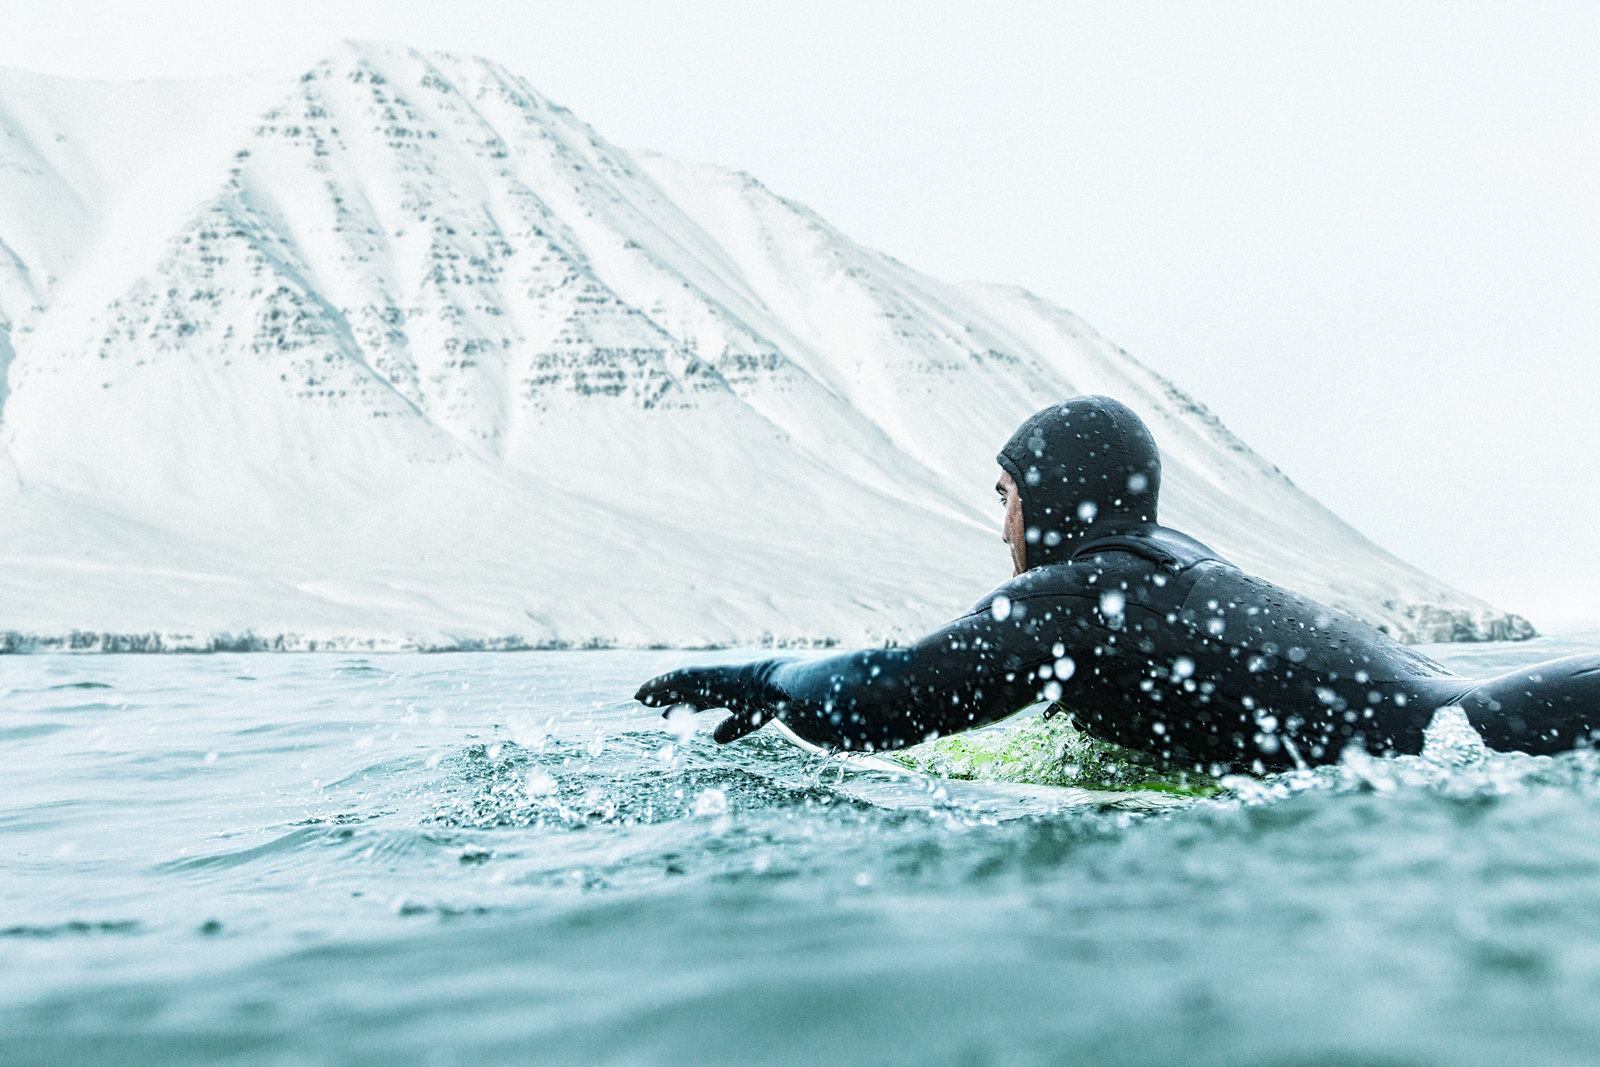 Iceland surfing in winter.